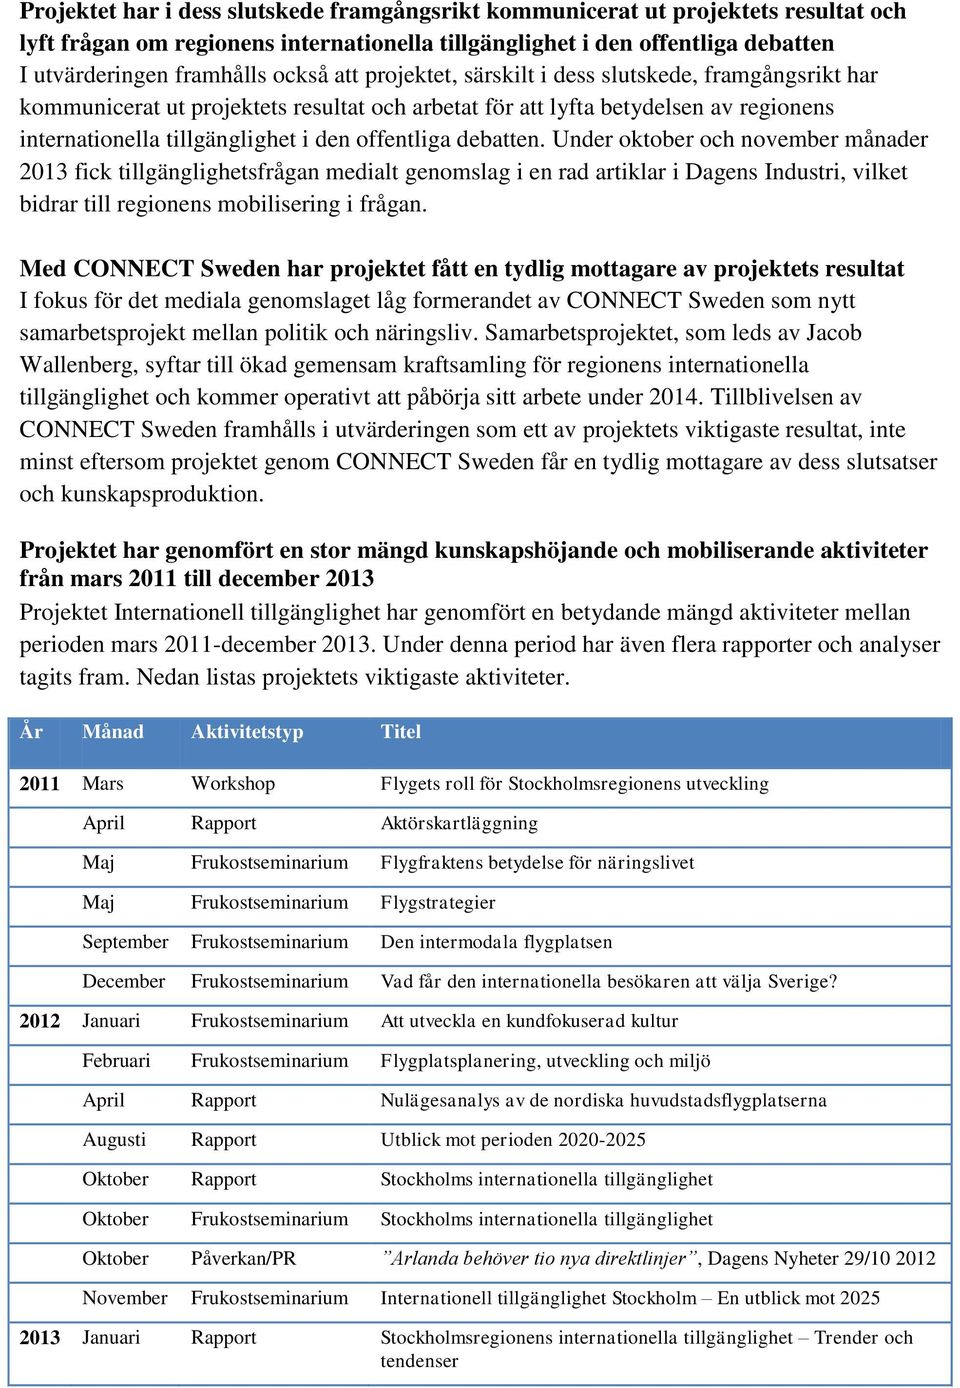 debatten. Under oktober och november månader 2013 fick tillgänglighetsfrågan medialt genomslag i en rad artiklar i Dagens Industri, vilket bidrar till regionens mobilisering i frågan.